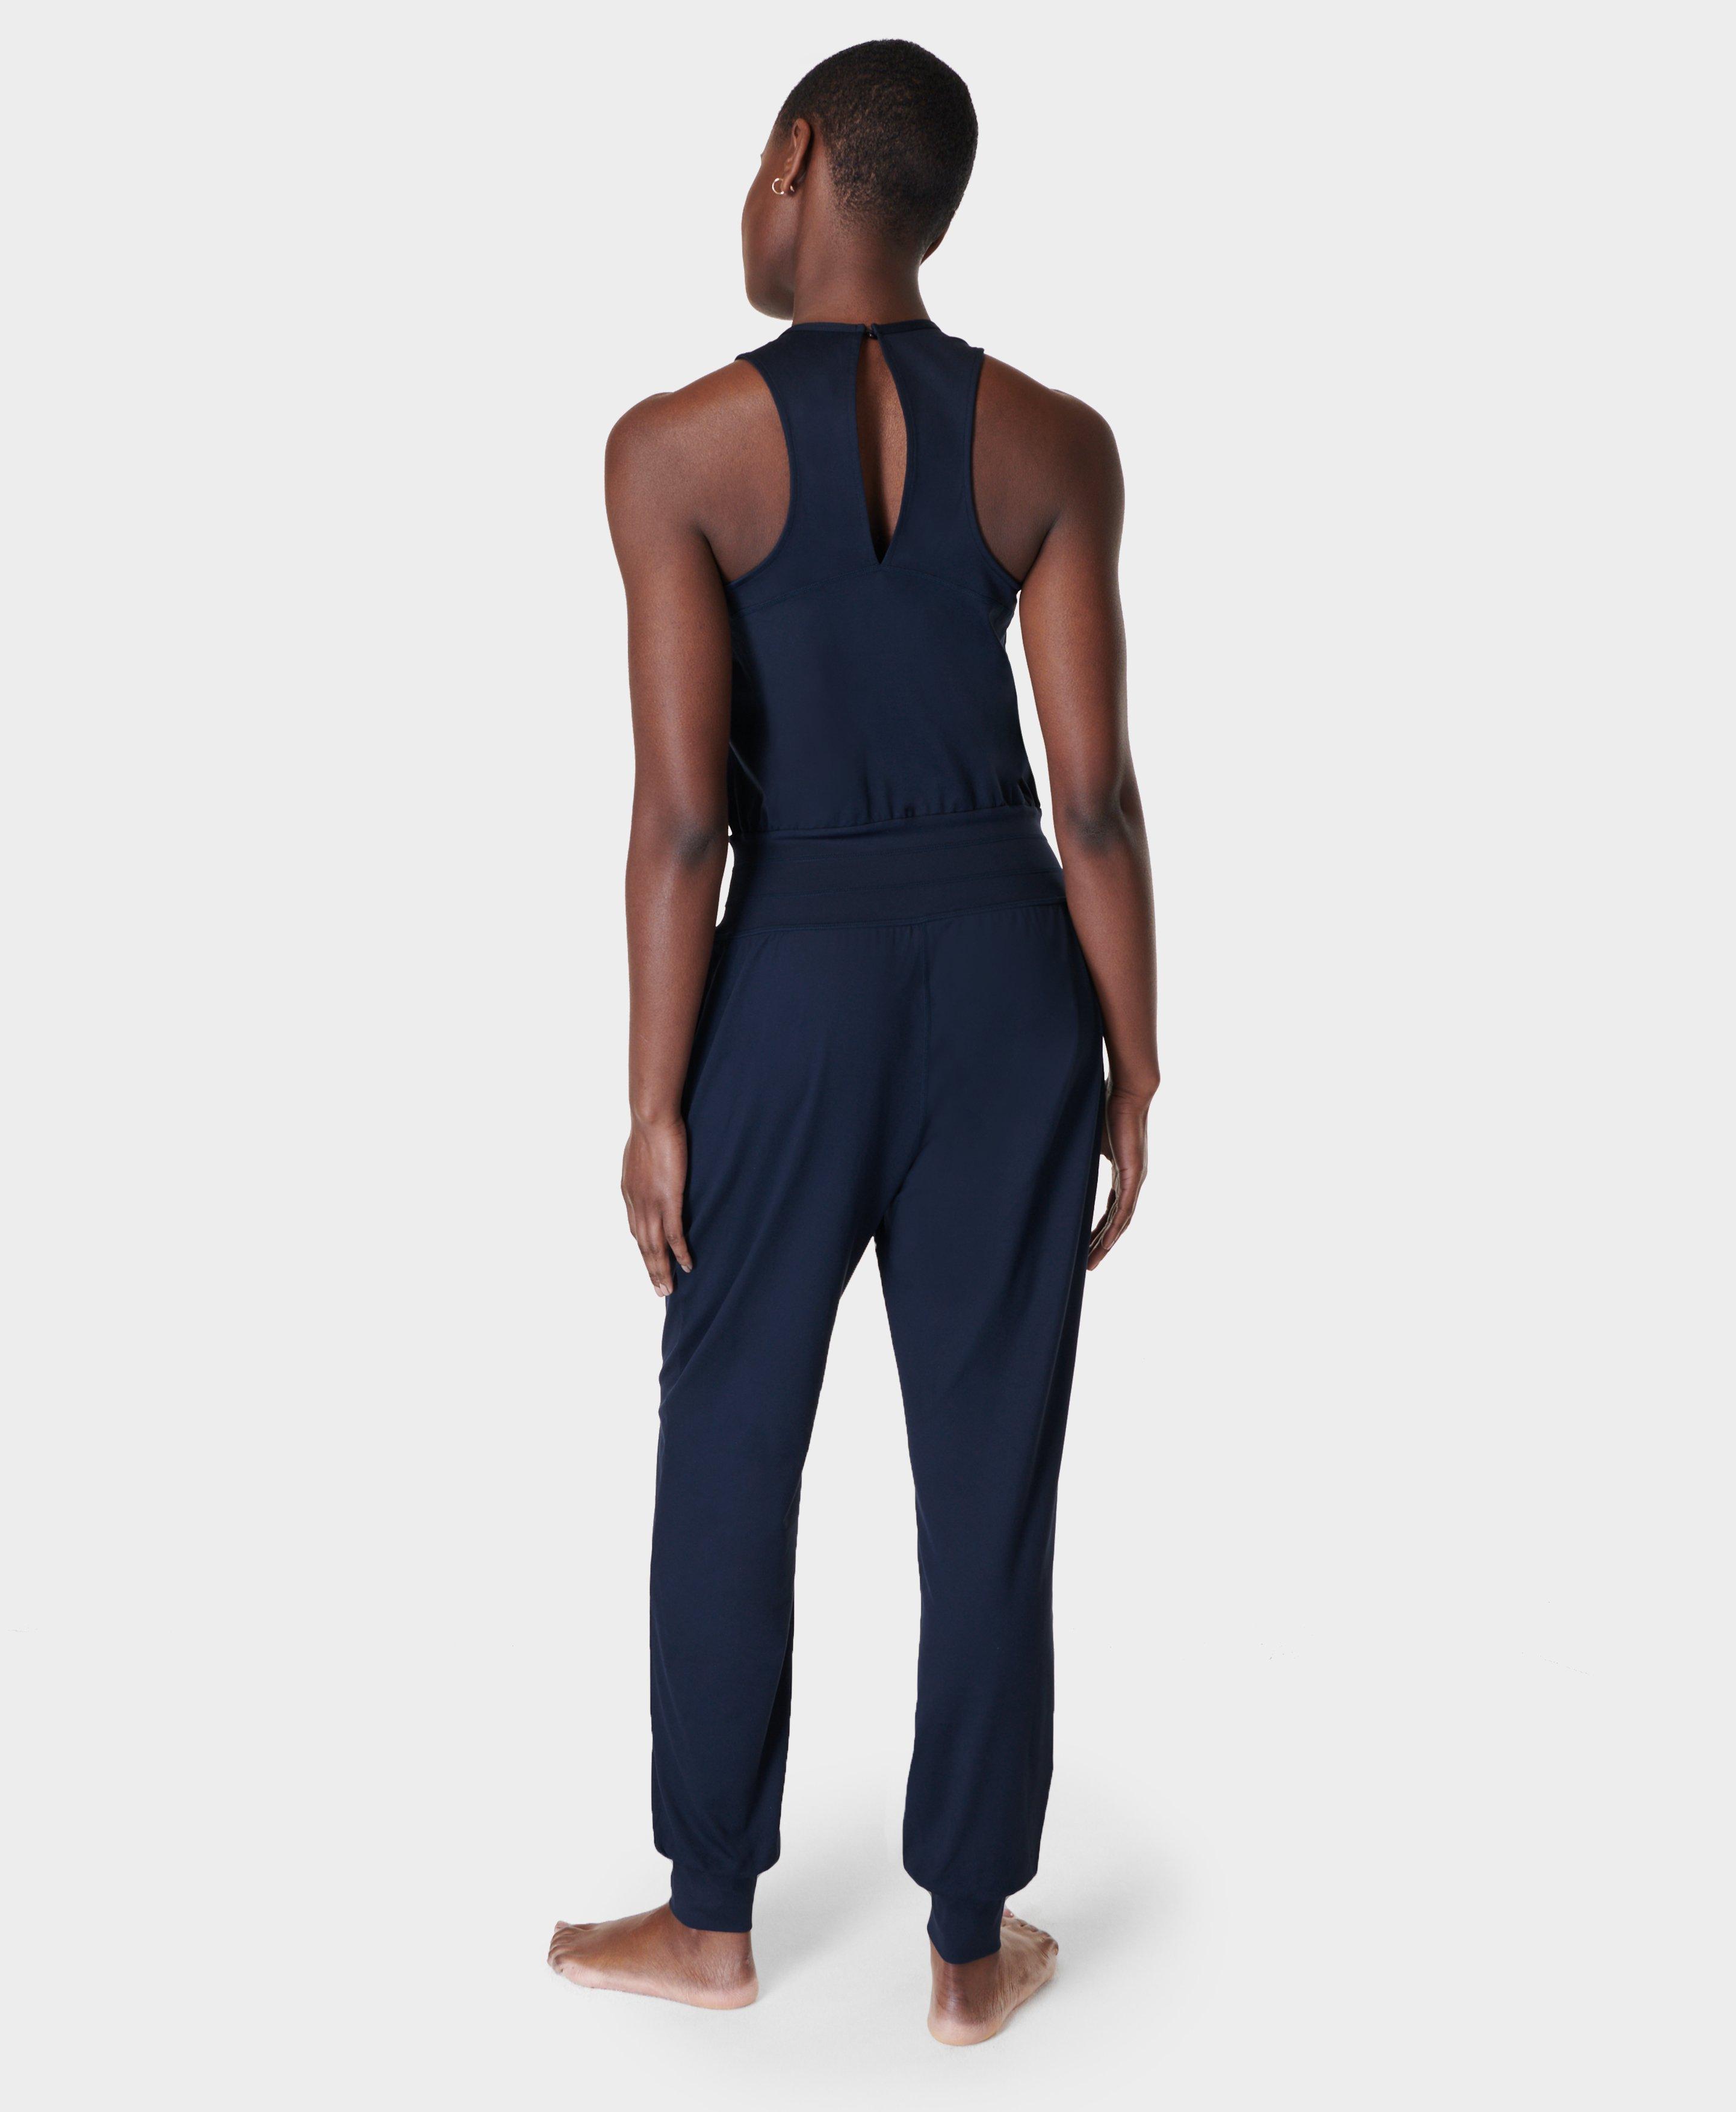 Gaia Yoga Jumpsuit - Navy Blue  Women's Dresses and Jumpsuits